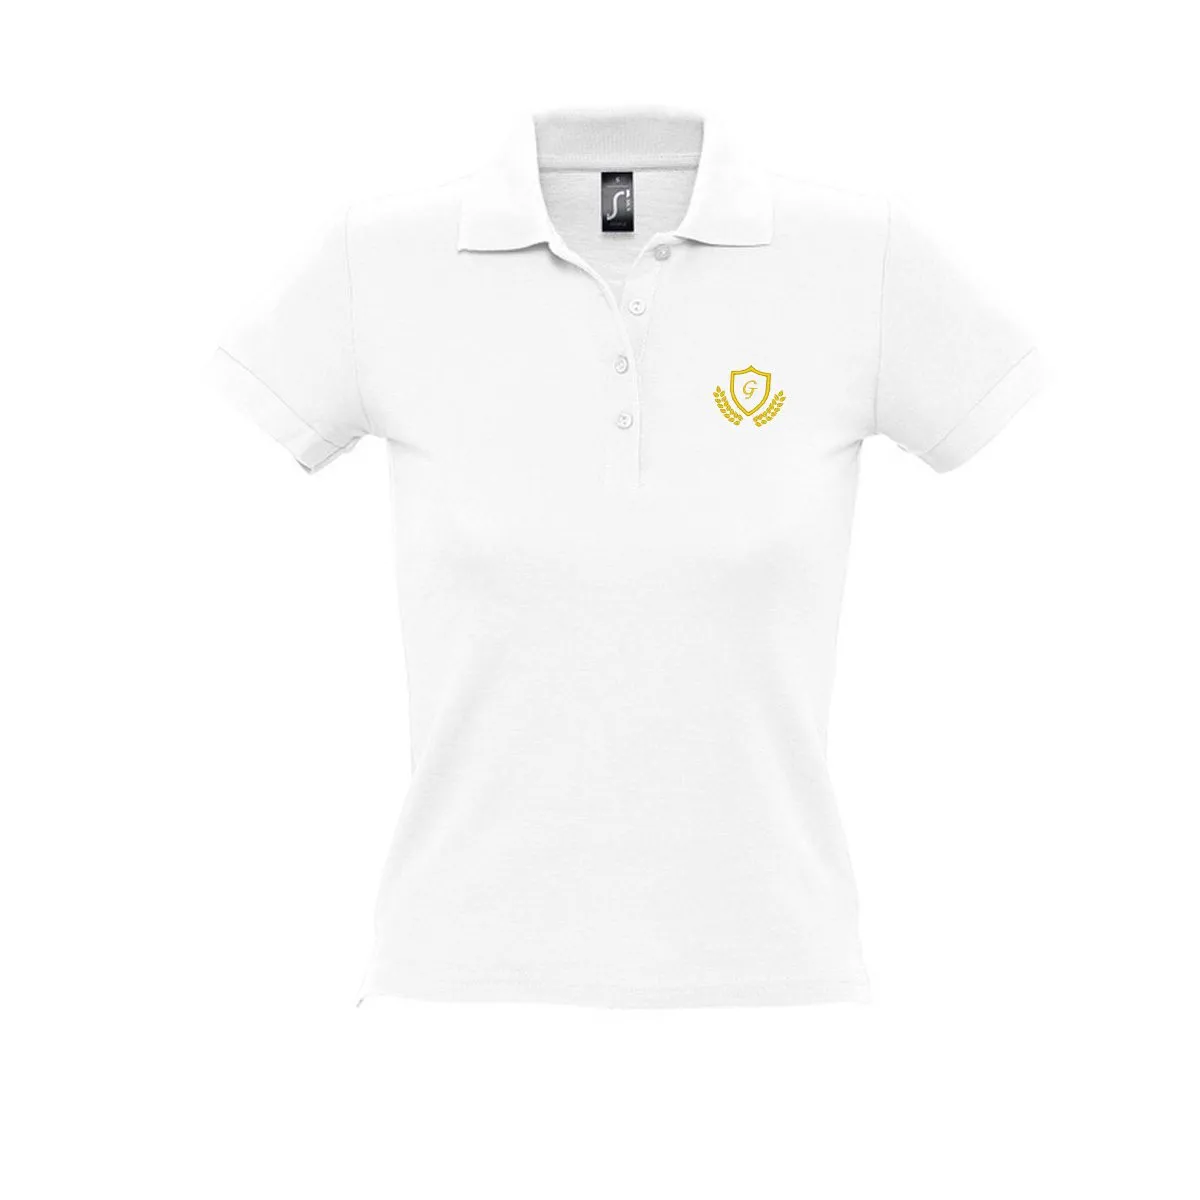 Personalisierbares Poloshirt für Frauen - Weiß - M